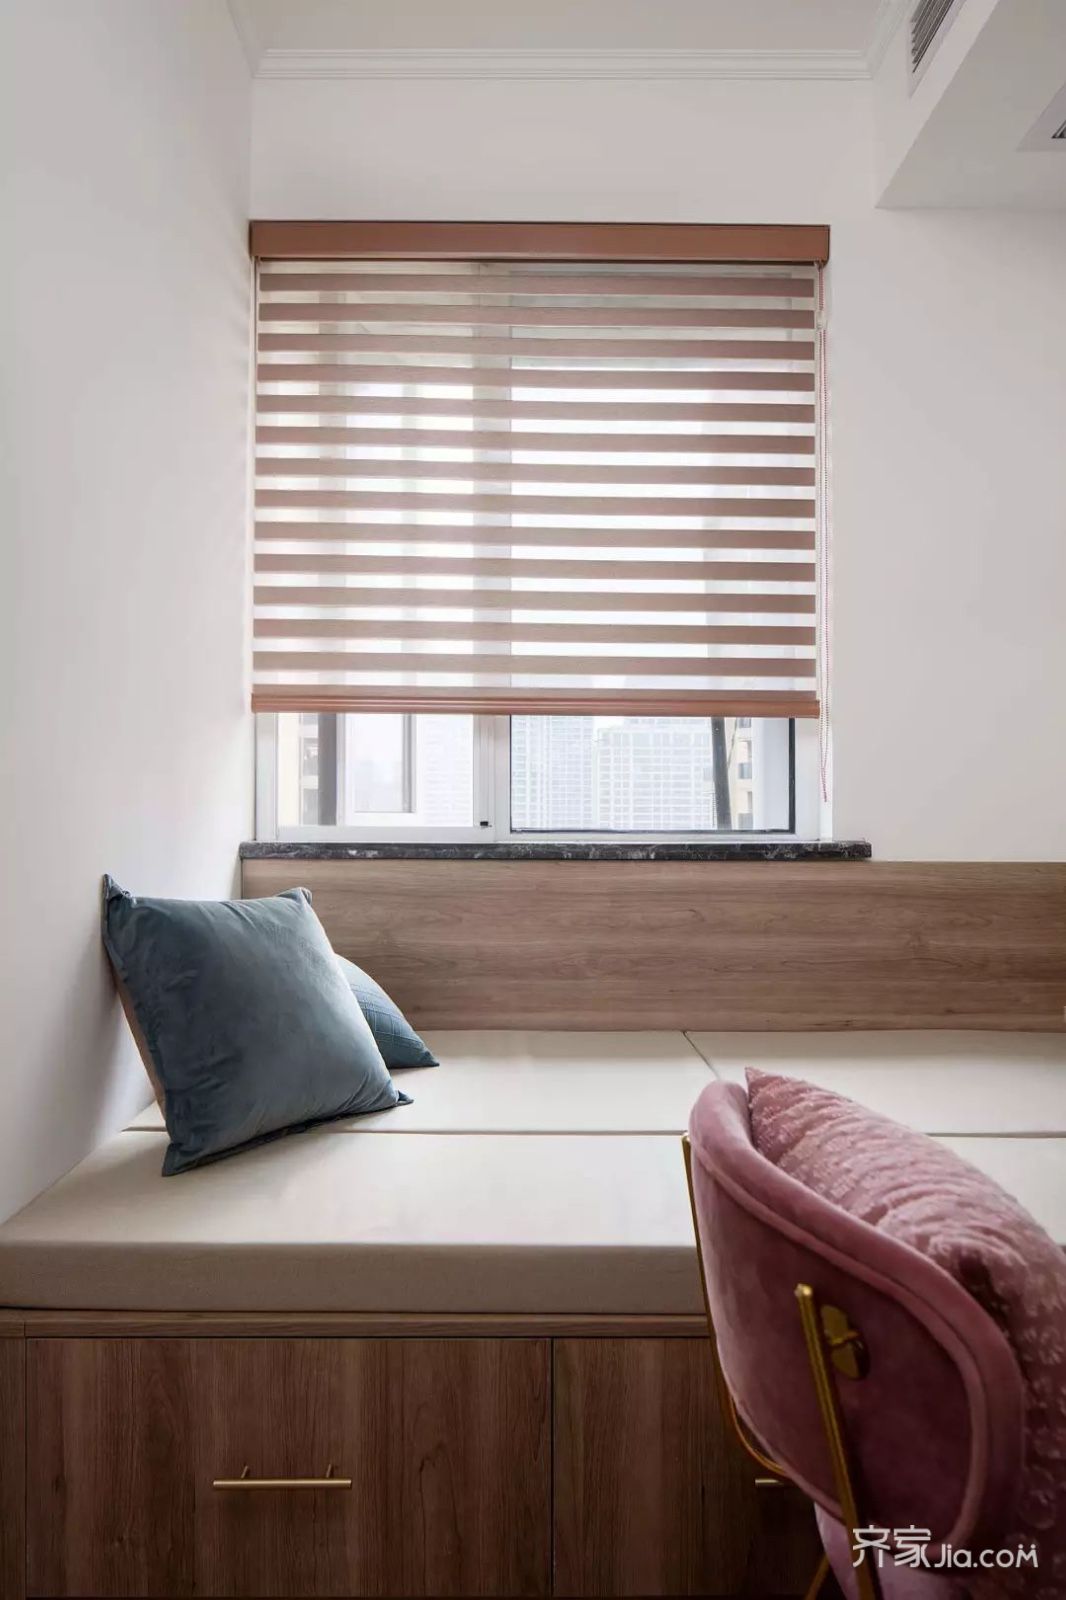 榻榻米床上垫着舒适的软垫,窗帘则是以木色的百叶帘布置,呈现出一种